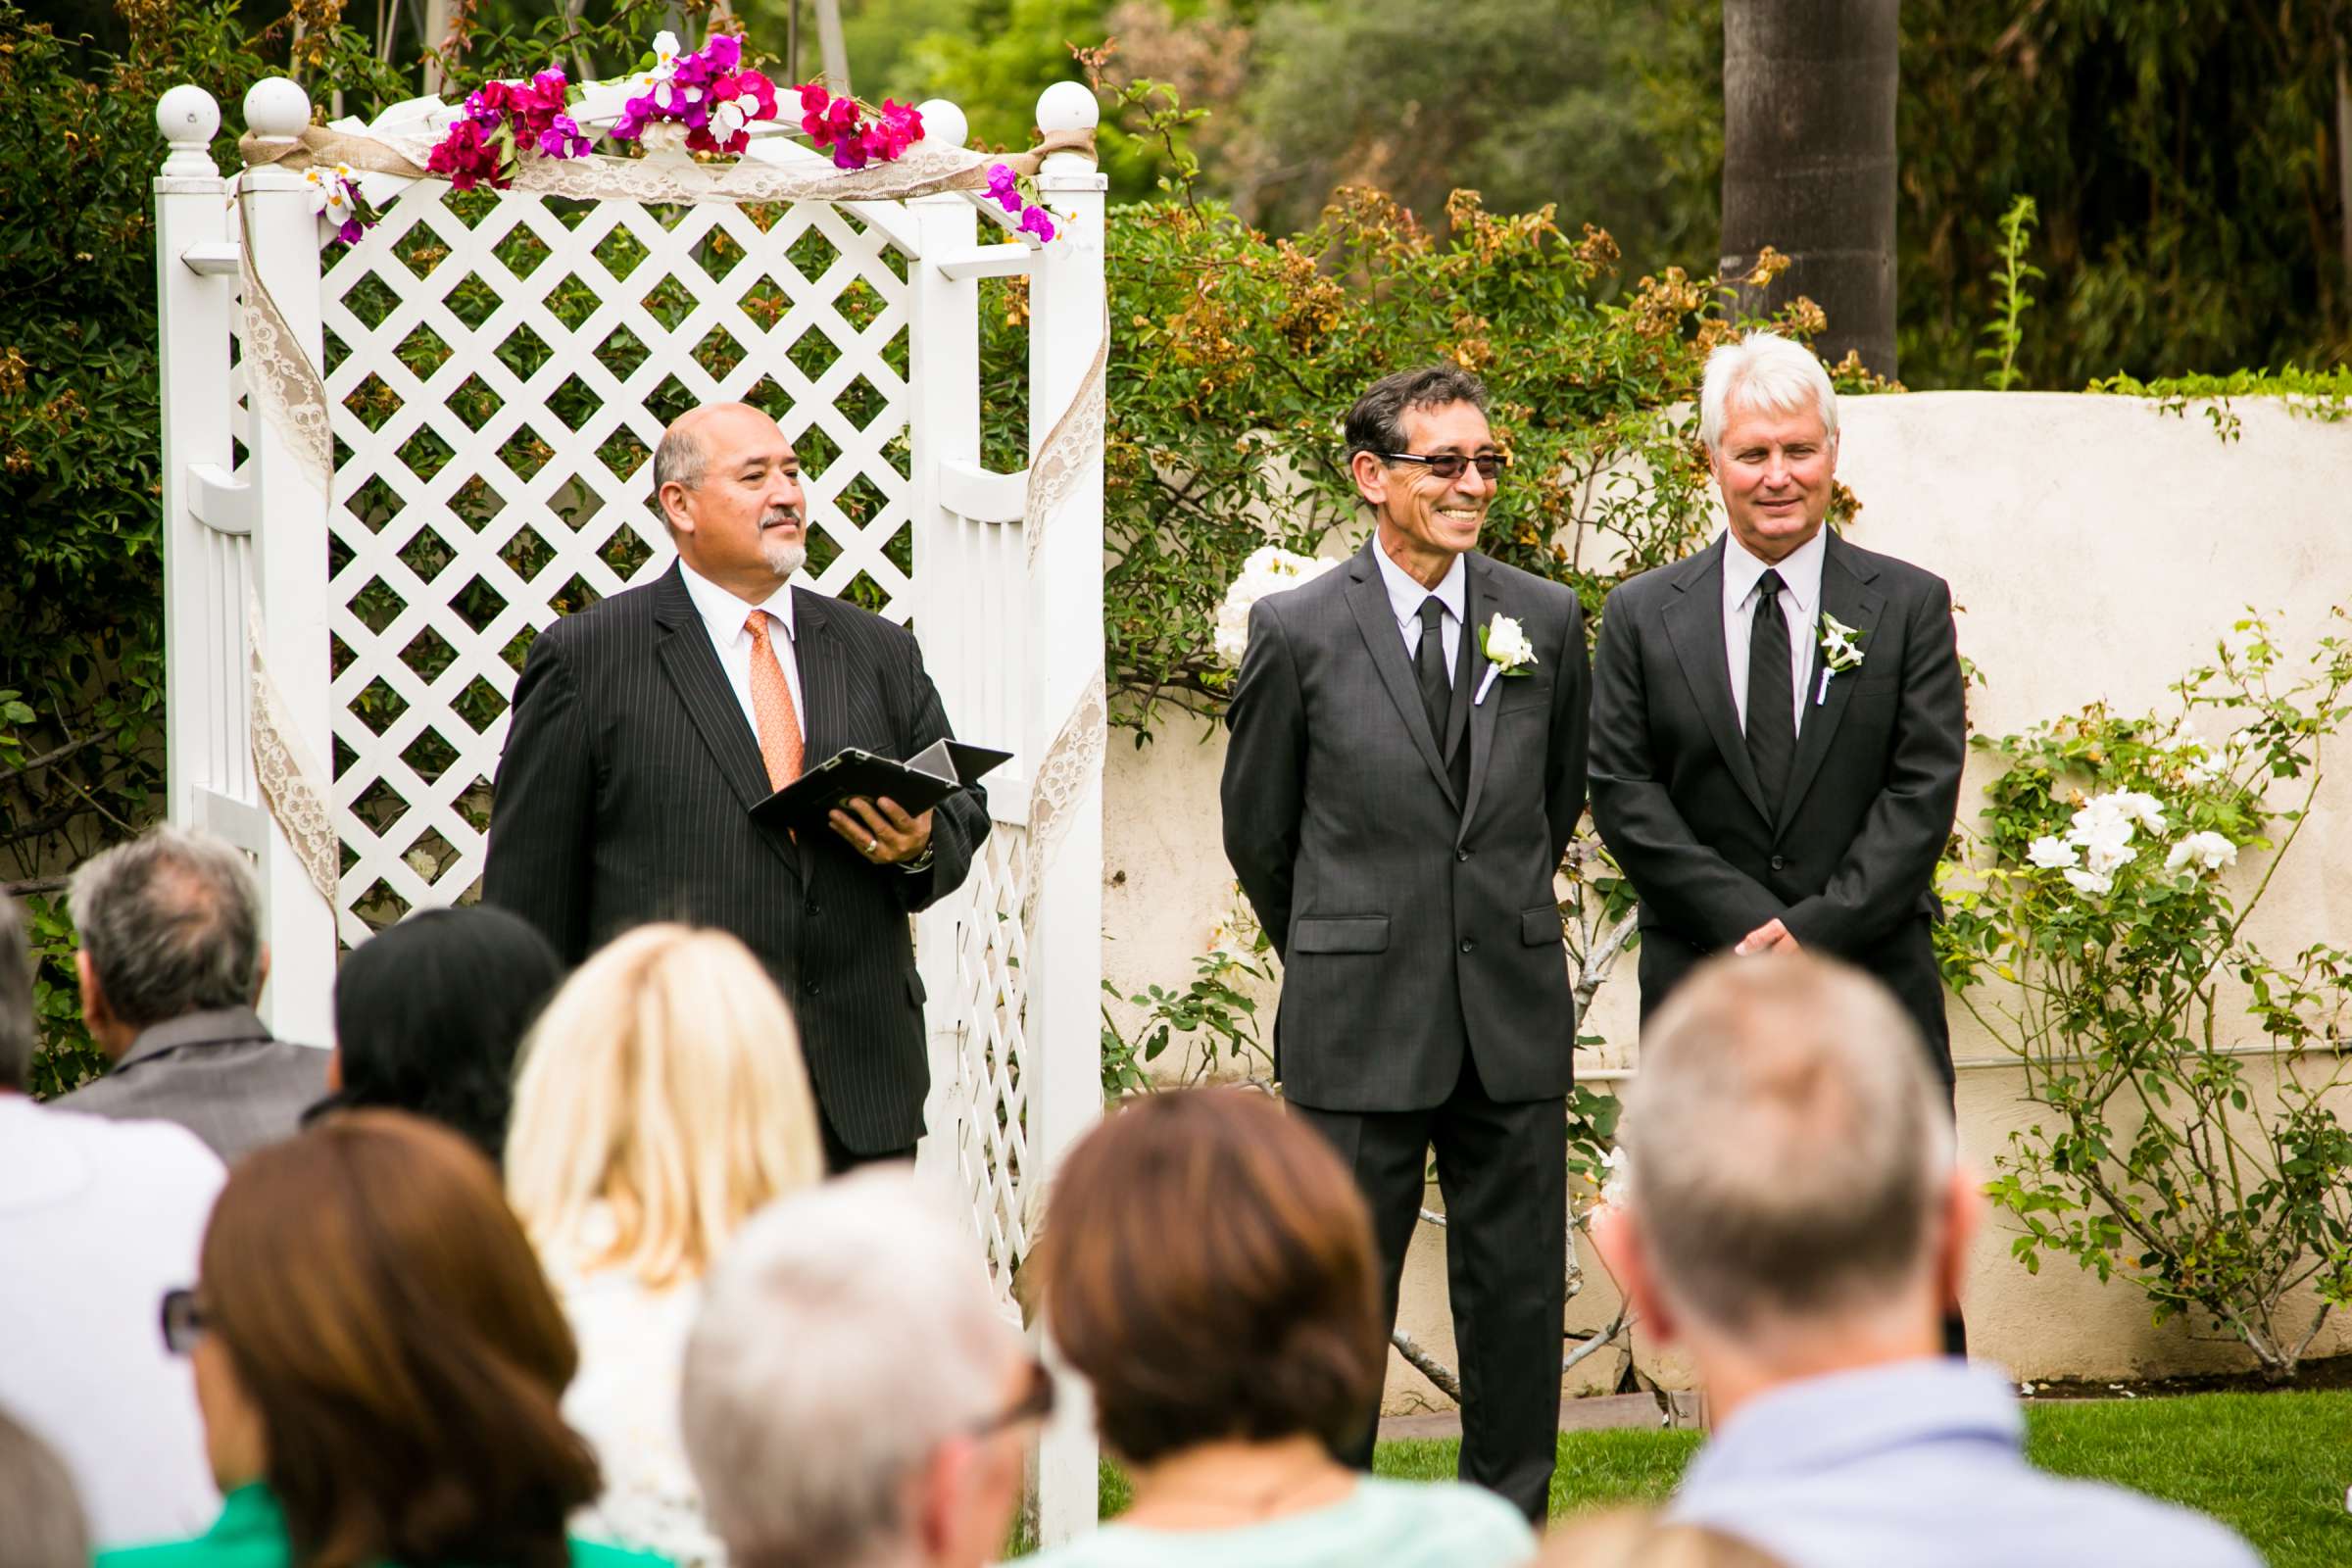 Rancho Buena Vista Adobe Wedding, Ellinor and Frank Wedding Photo #21 by True Photography